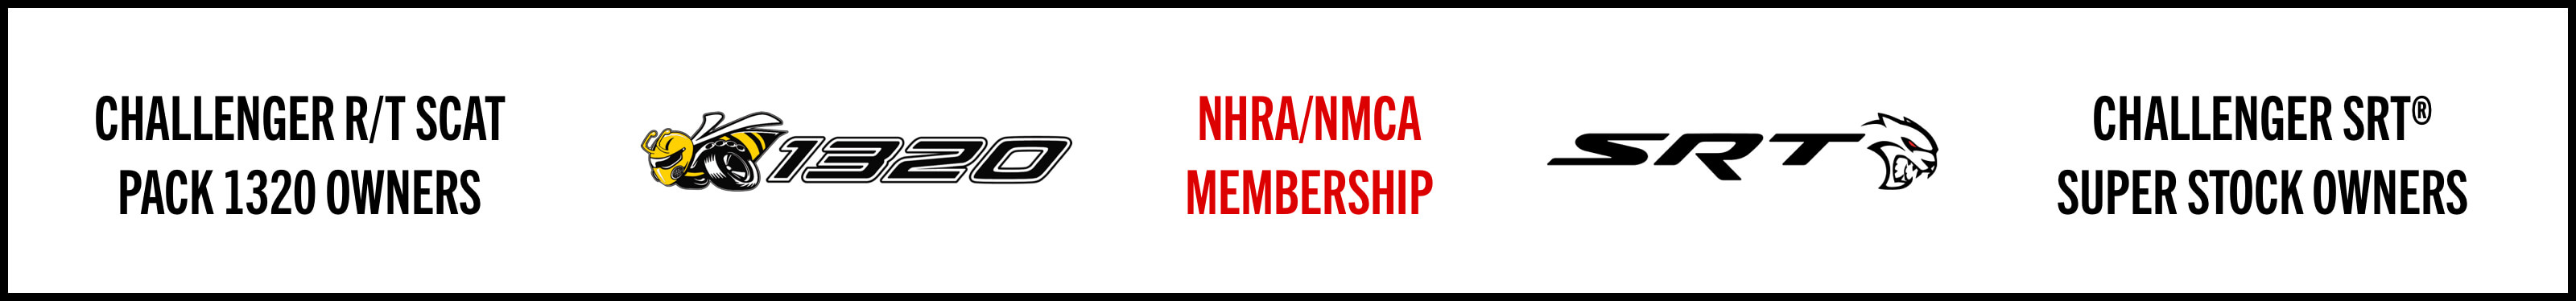 2019 Owner Perks - NHRA & NMCA Memberships